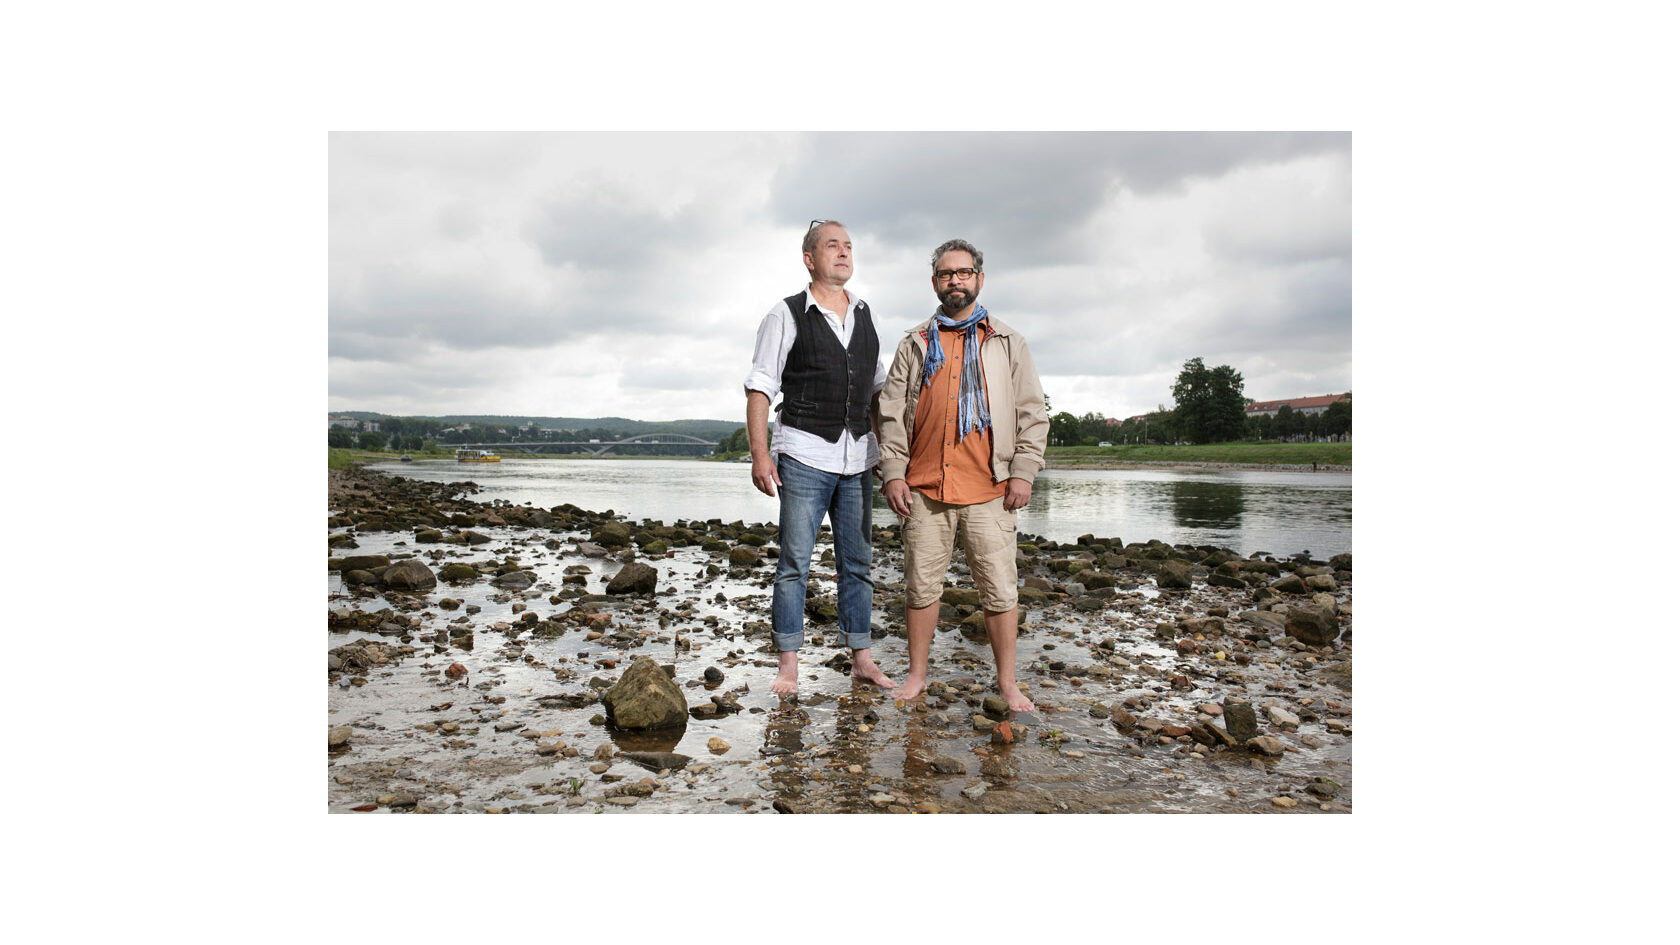 Portraitfoto der Initiatoren des Projekts "You, me & mei", Jürgen Czytrich und Magnus Hecht. Sie stehen am Elbufer mit den Füßen im Wasser.